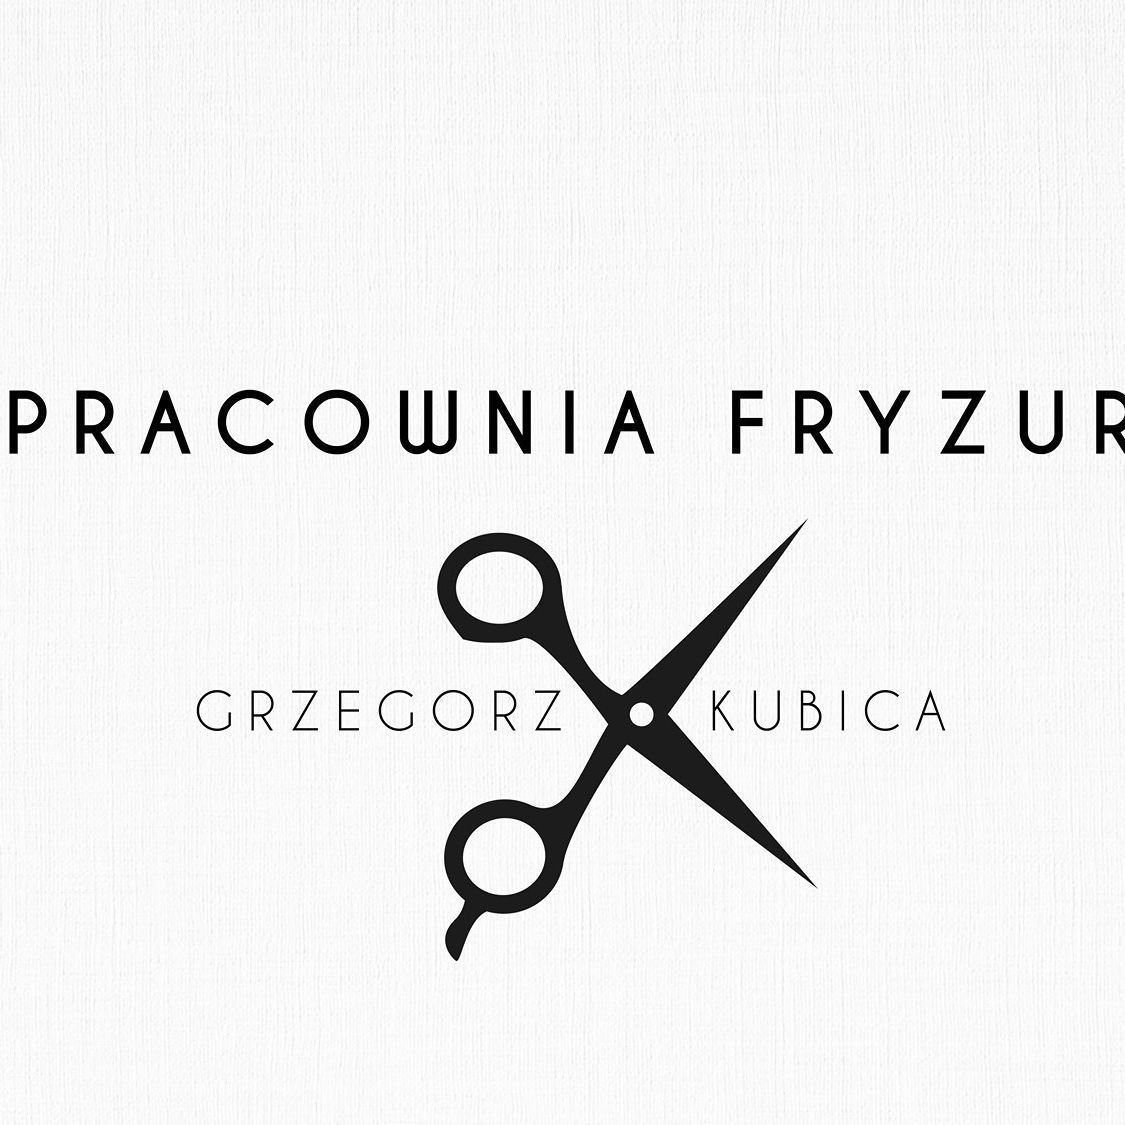 Pracownia Fryzur G&K, osiedle Oświecenia 33b/, 4, 31-636, Kraków, Nowa Huta